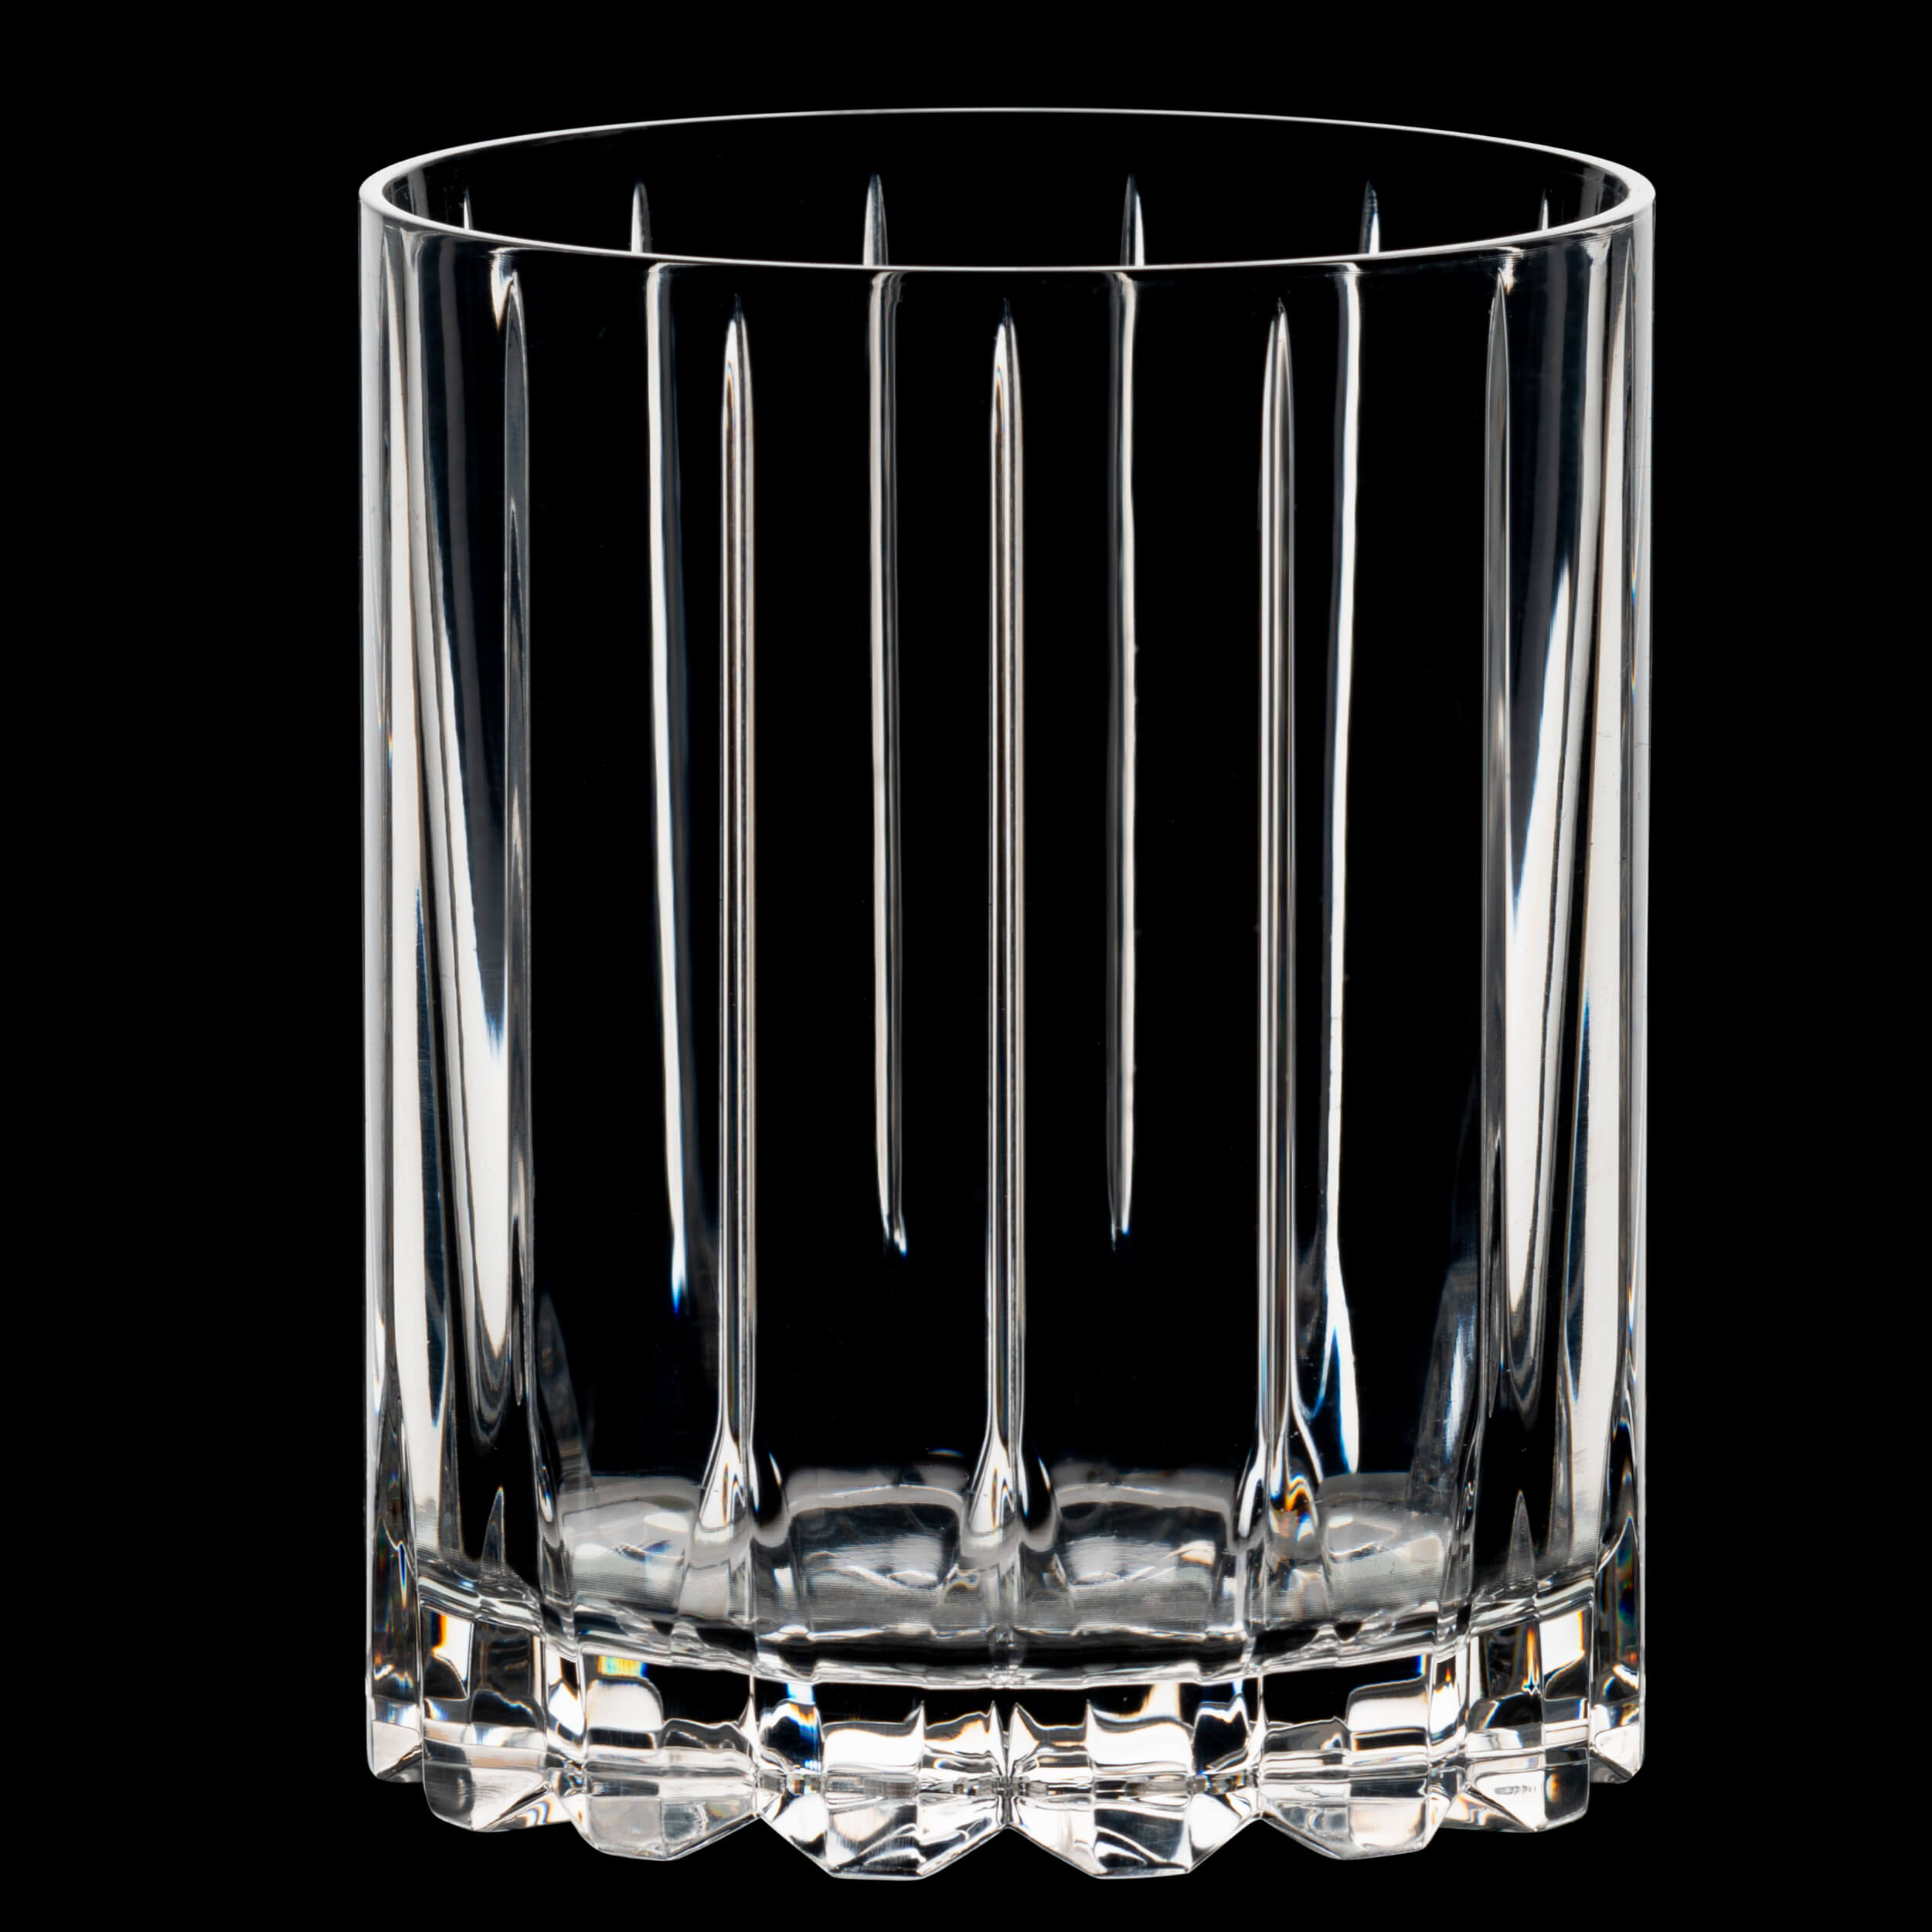 Double Rocks Glas Drink Specific Glassware, Riedel Bar - 370ml (2 Stk.)